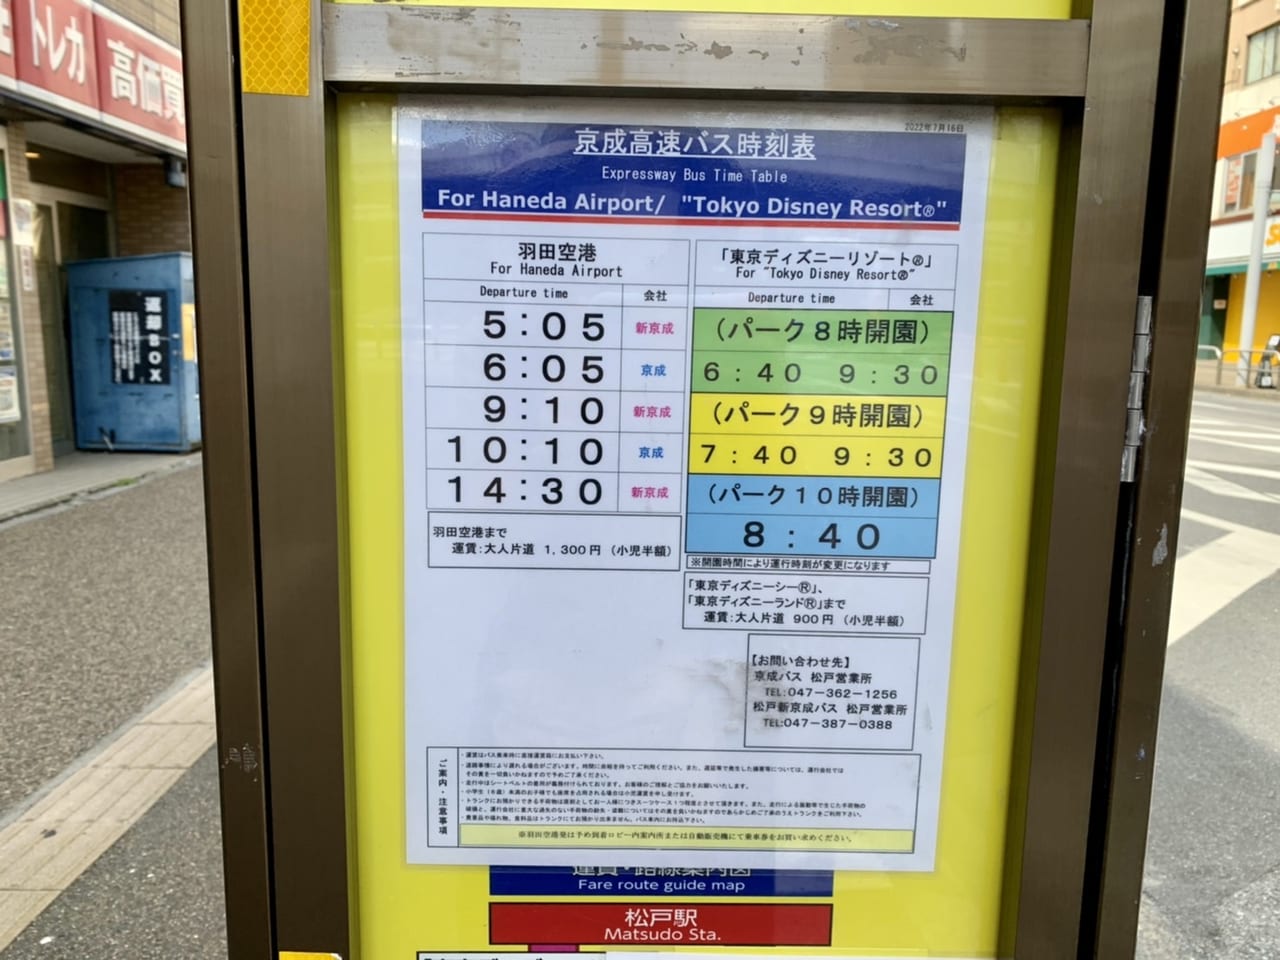 松戸市 高速バス 松戸駅 東京ディズニーリゾート 線は 9月30日 金 をもって運行終了となります 号外net 松戸市